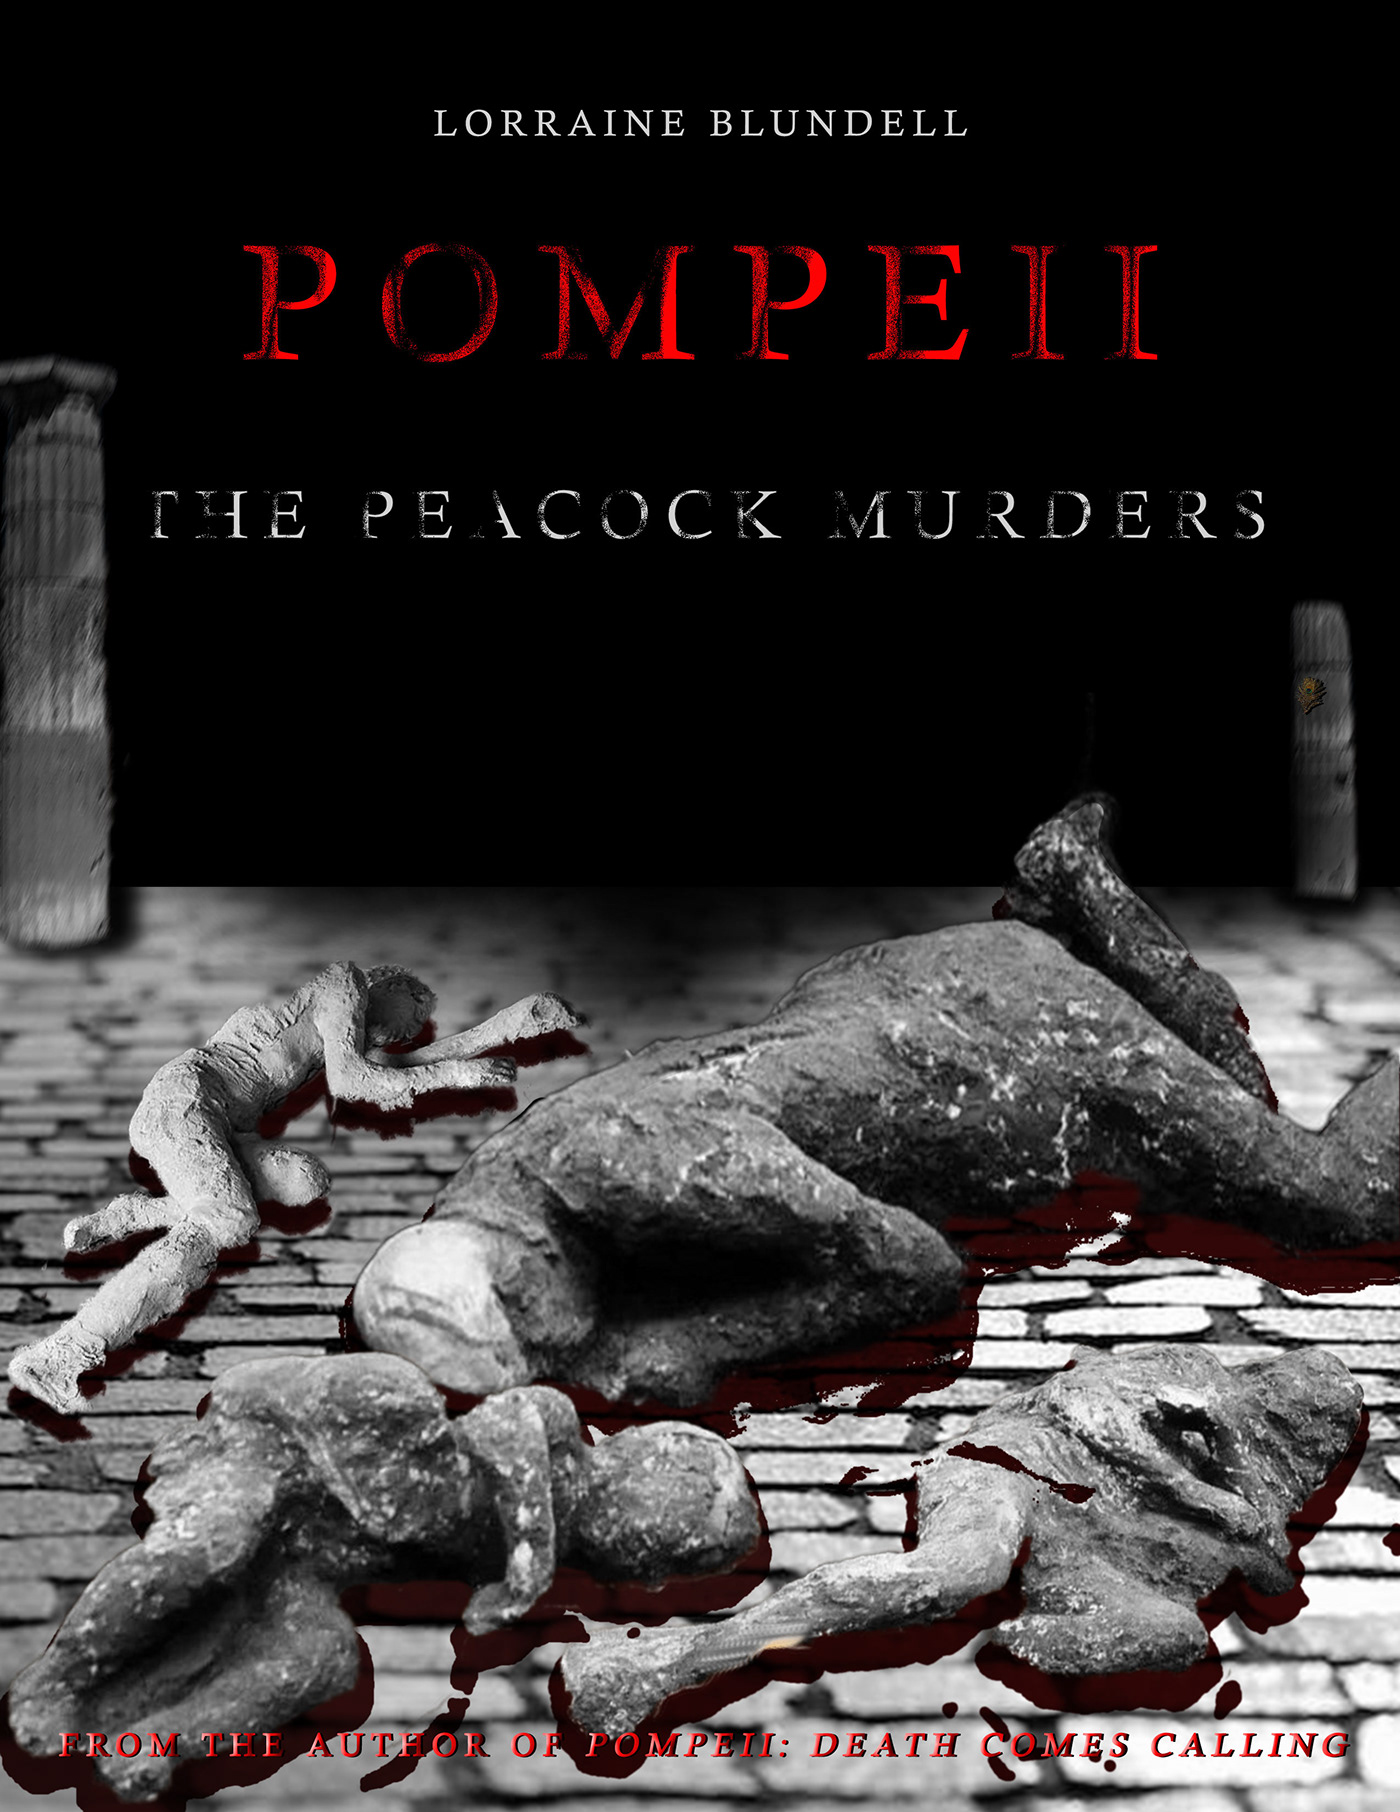 Pompeii vesuvius ruins history culture Book Cover Design books book design cover design